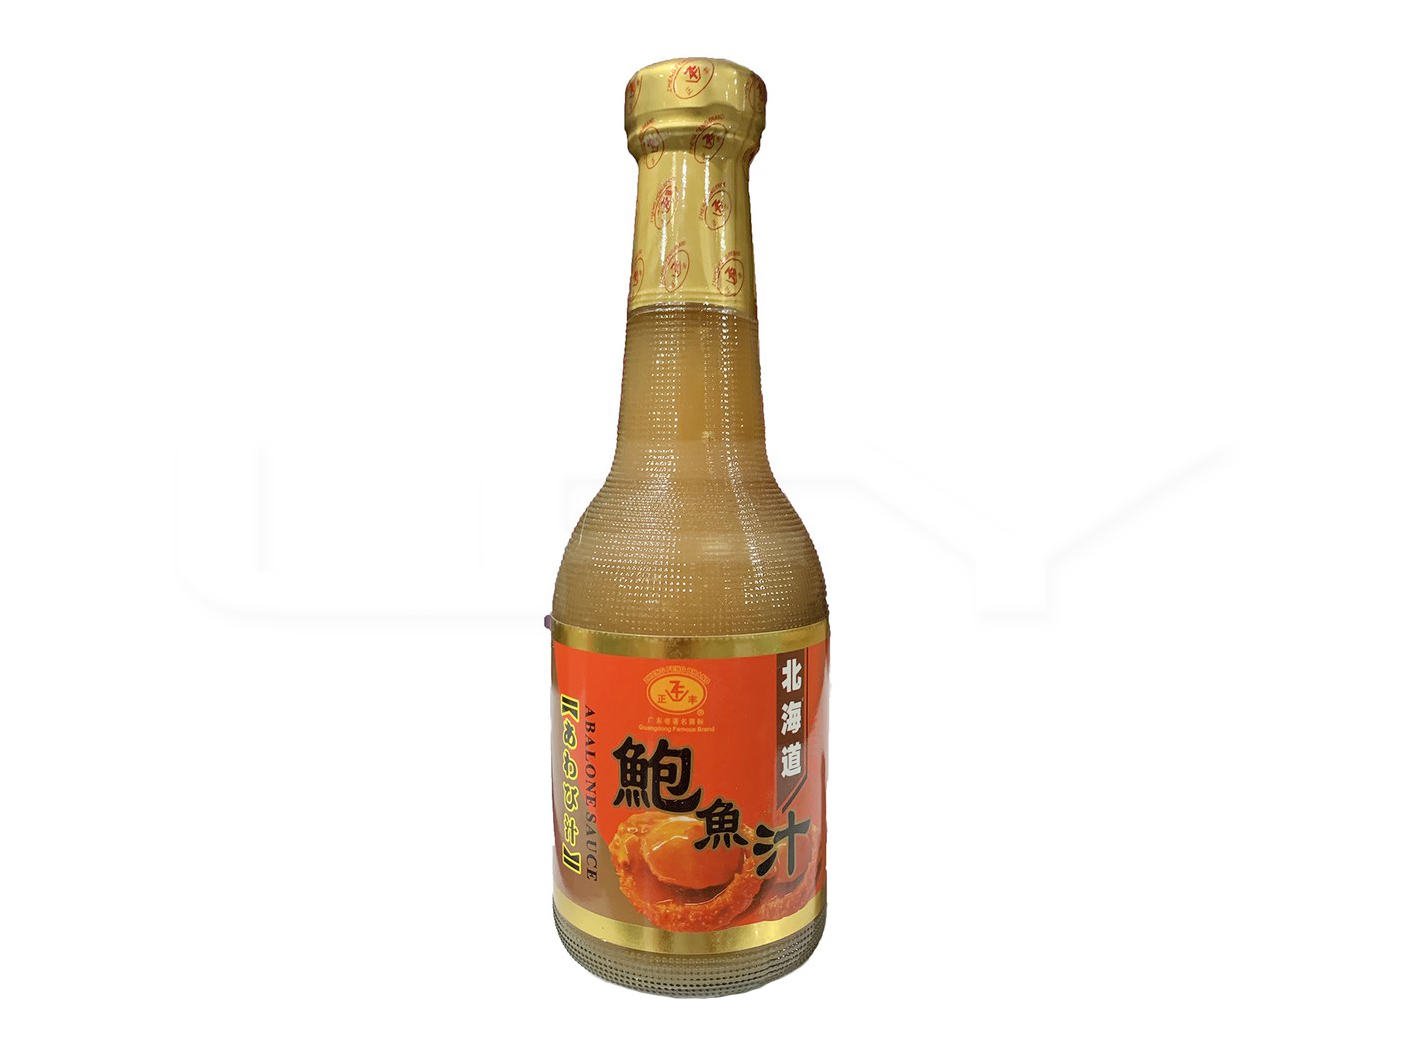 Zheng Feng Brand Abalone Sauce / 北海道鲍鱼汁 380g